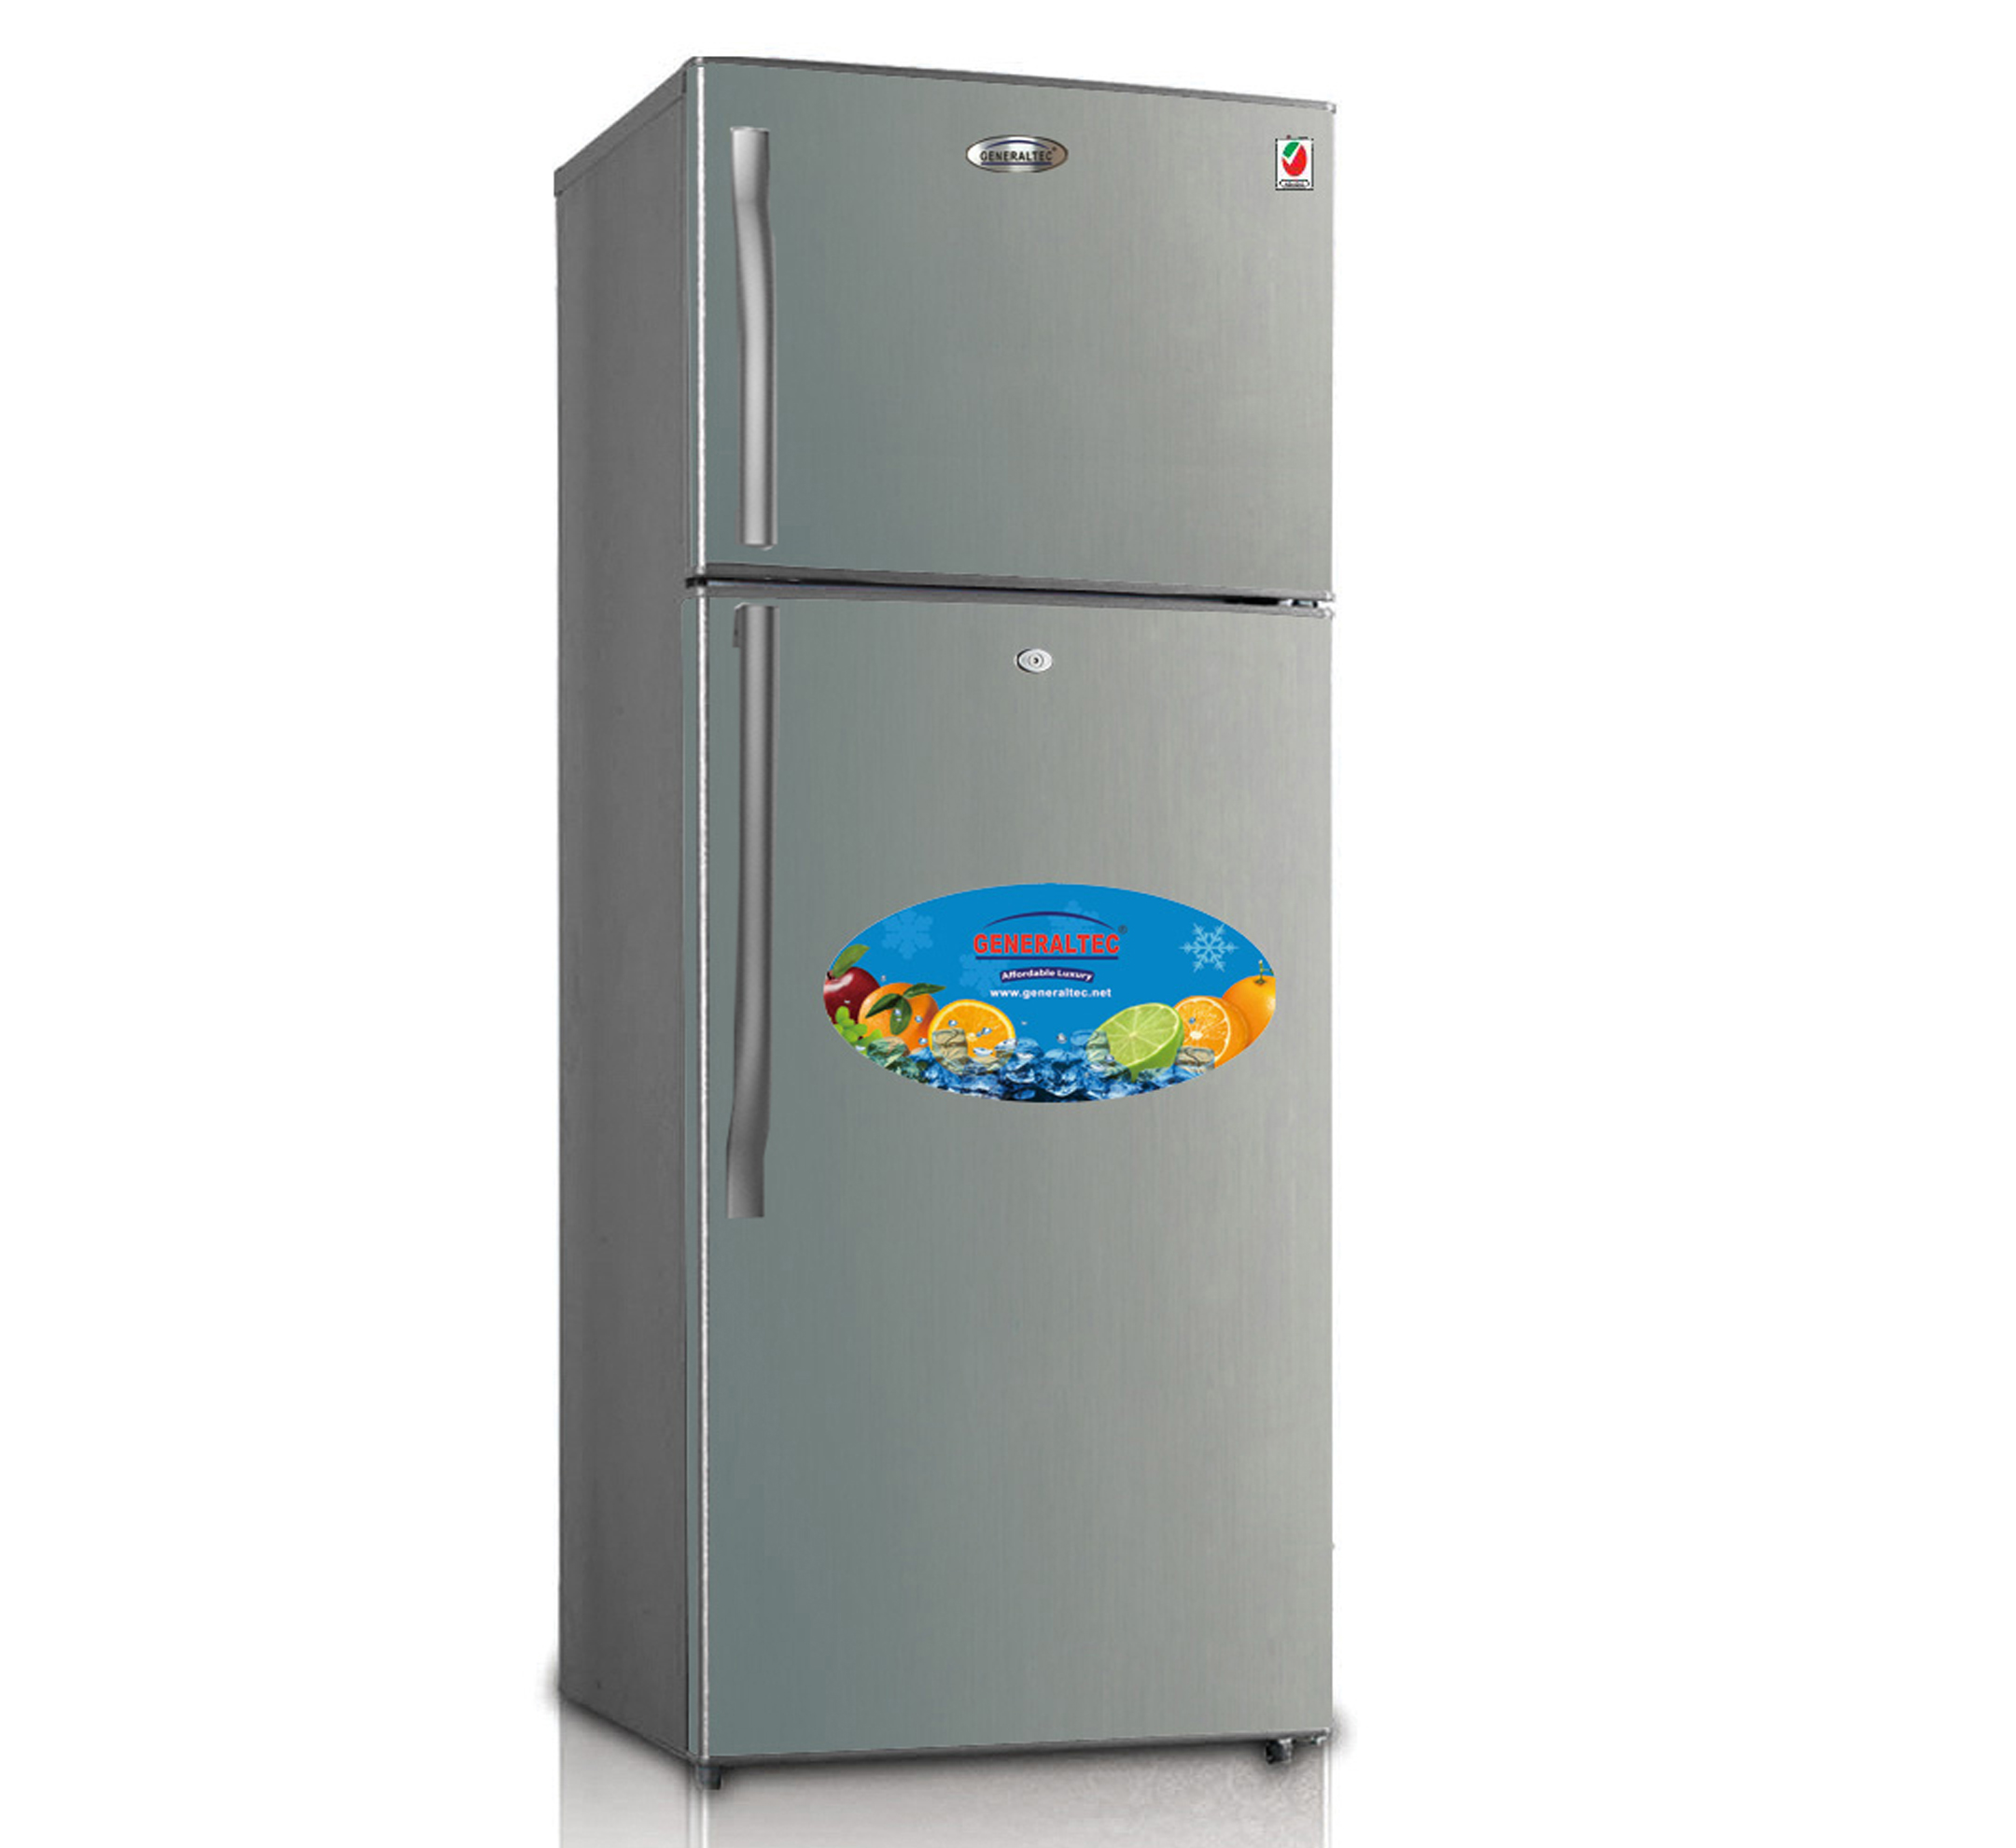 Refrigerator Double Door Model No. GR600SN